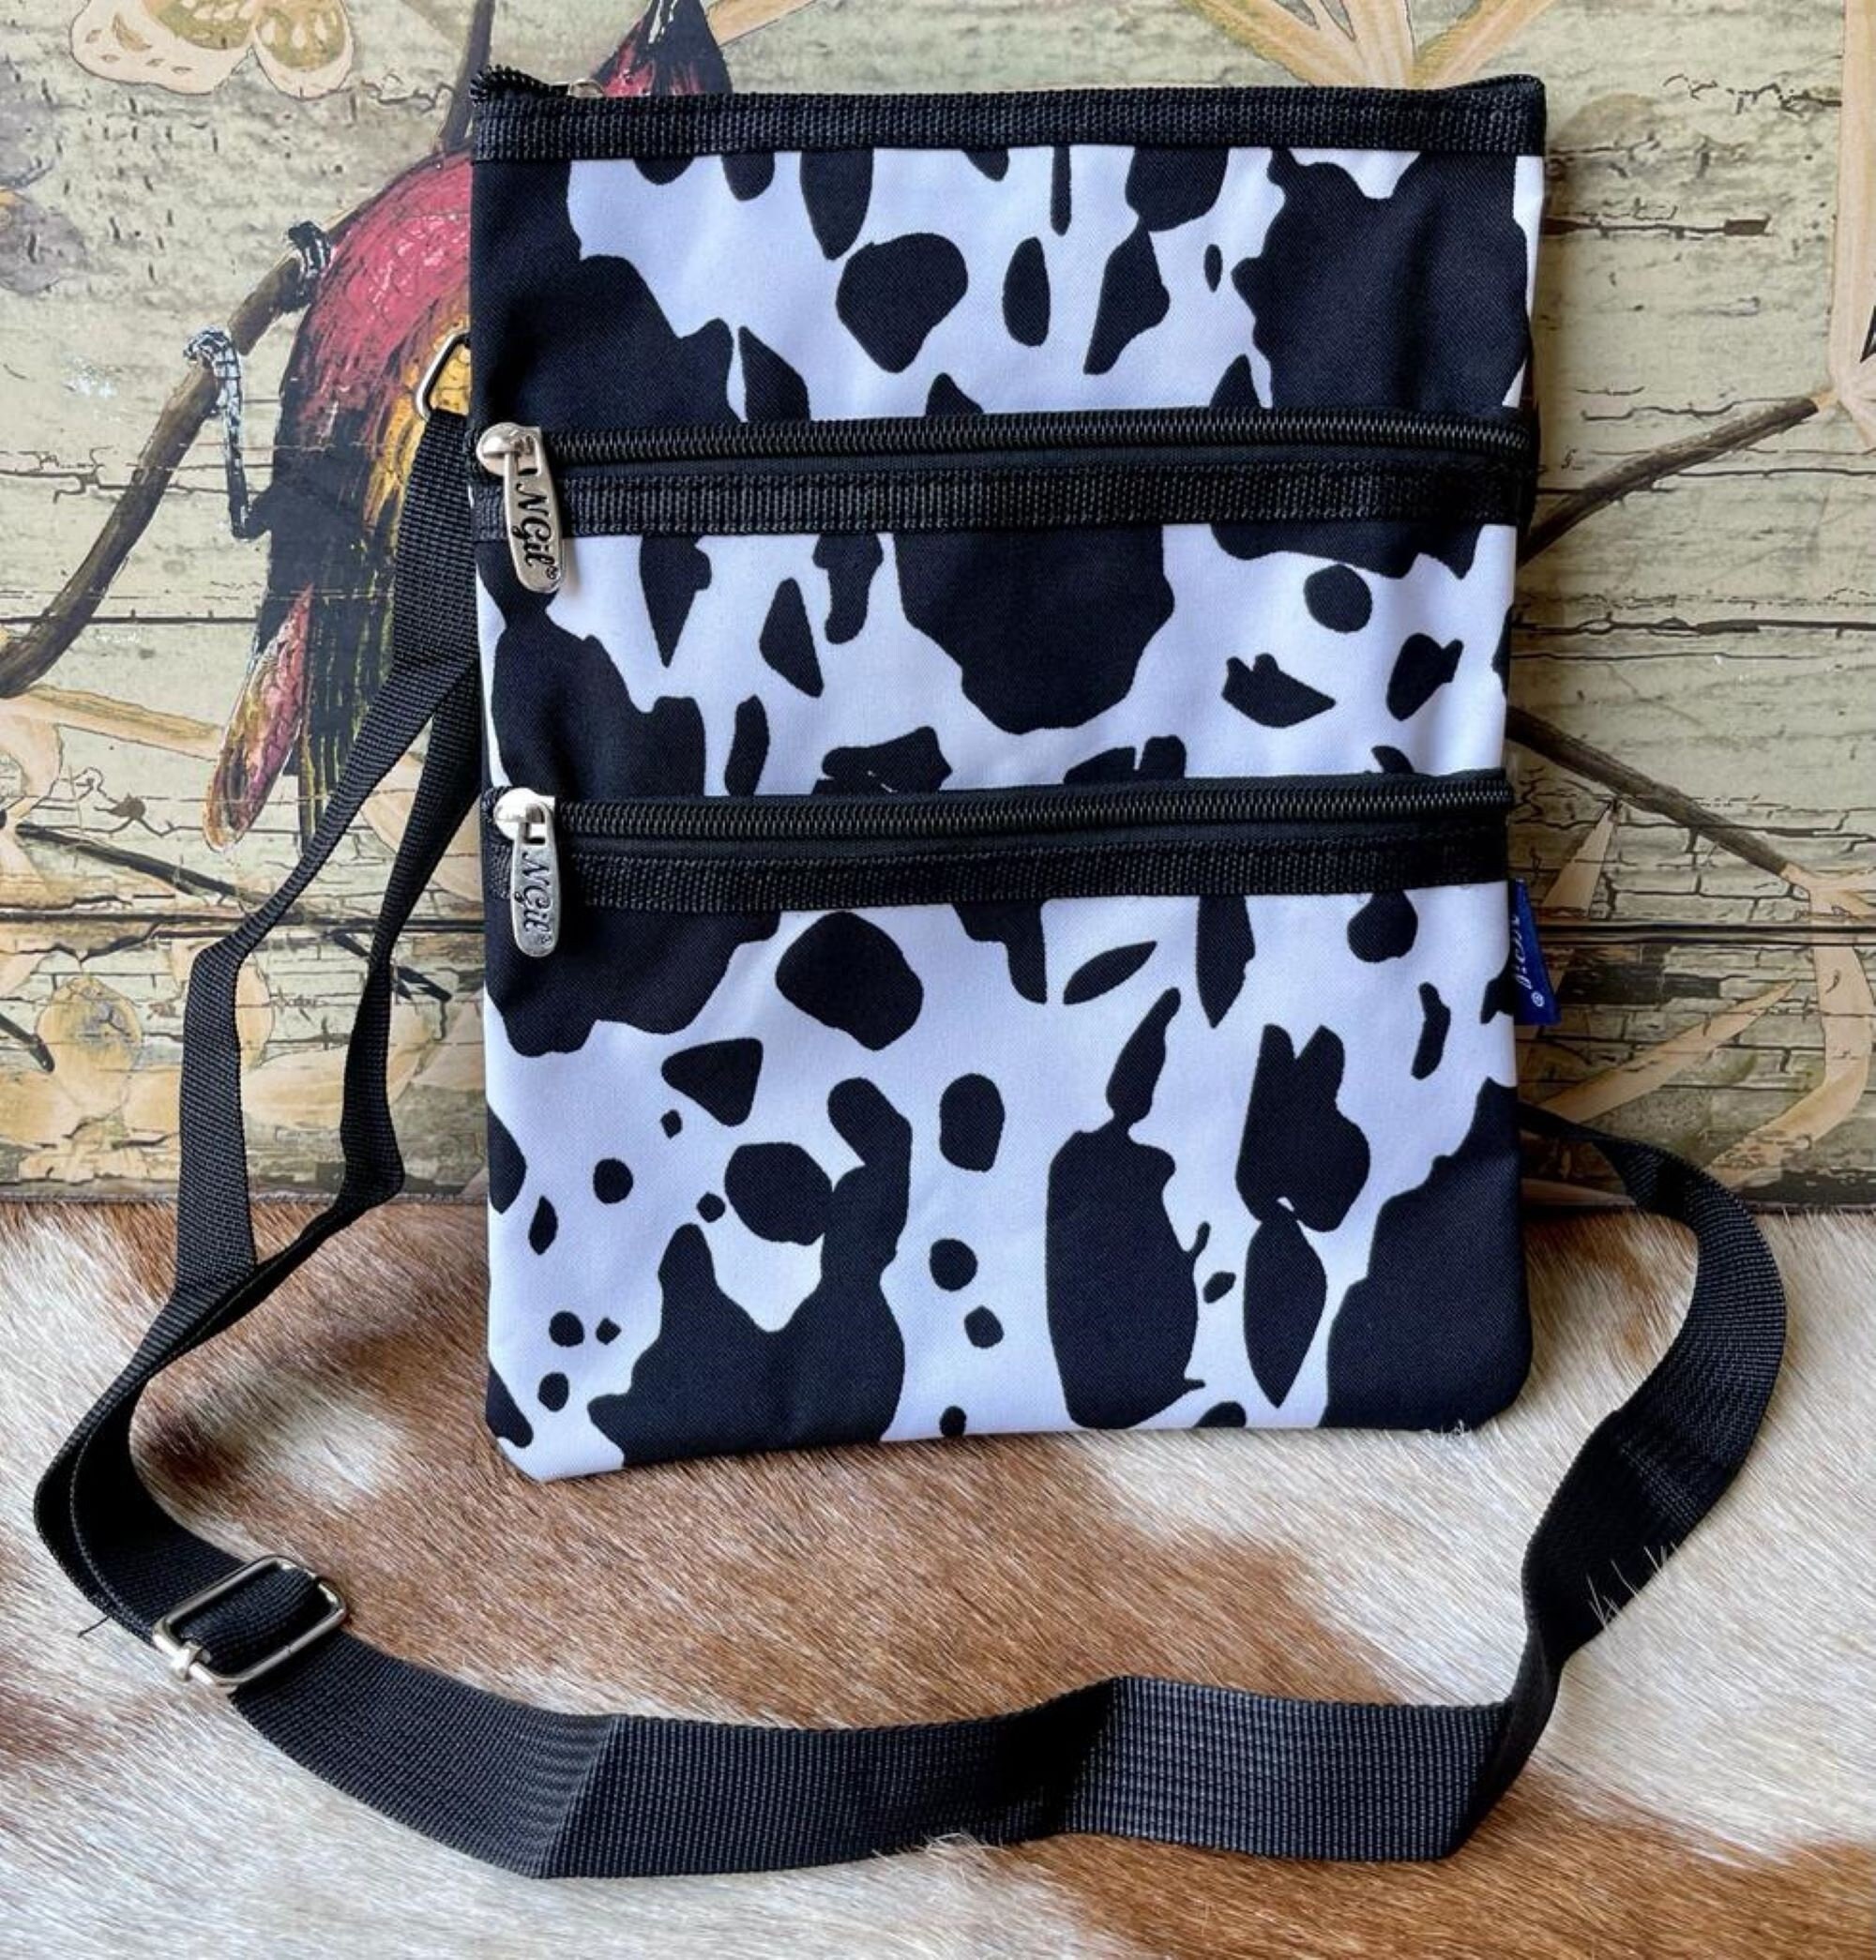 Cow Print NGIL Fashion Faux Leather Mini Purse With Fringe Tassel